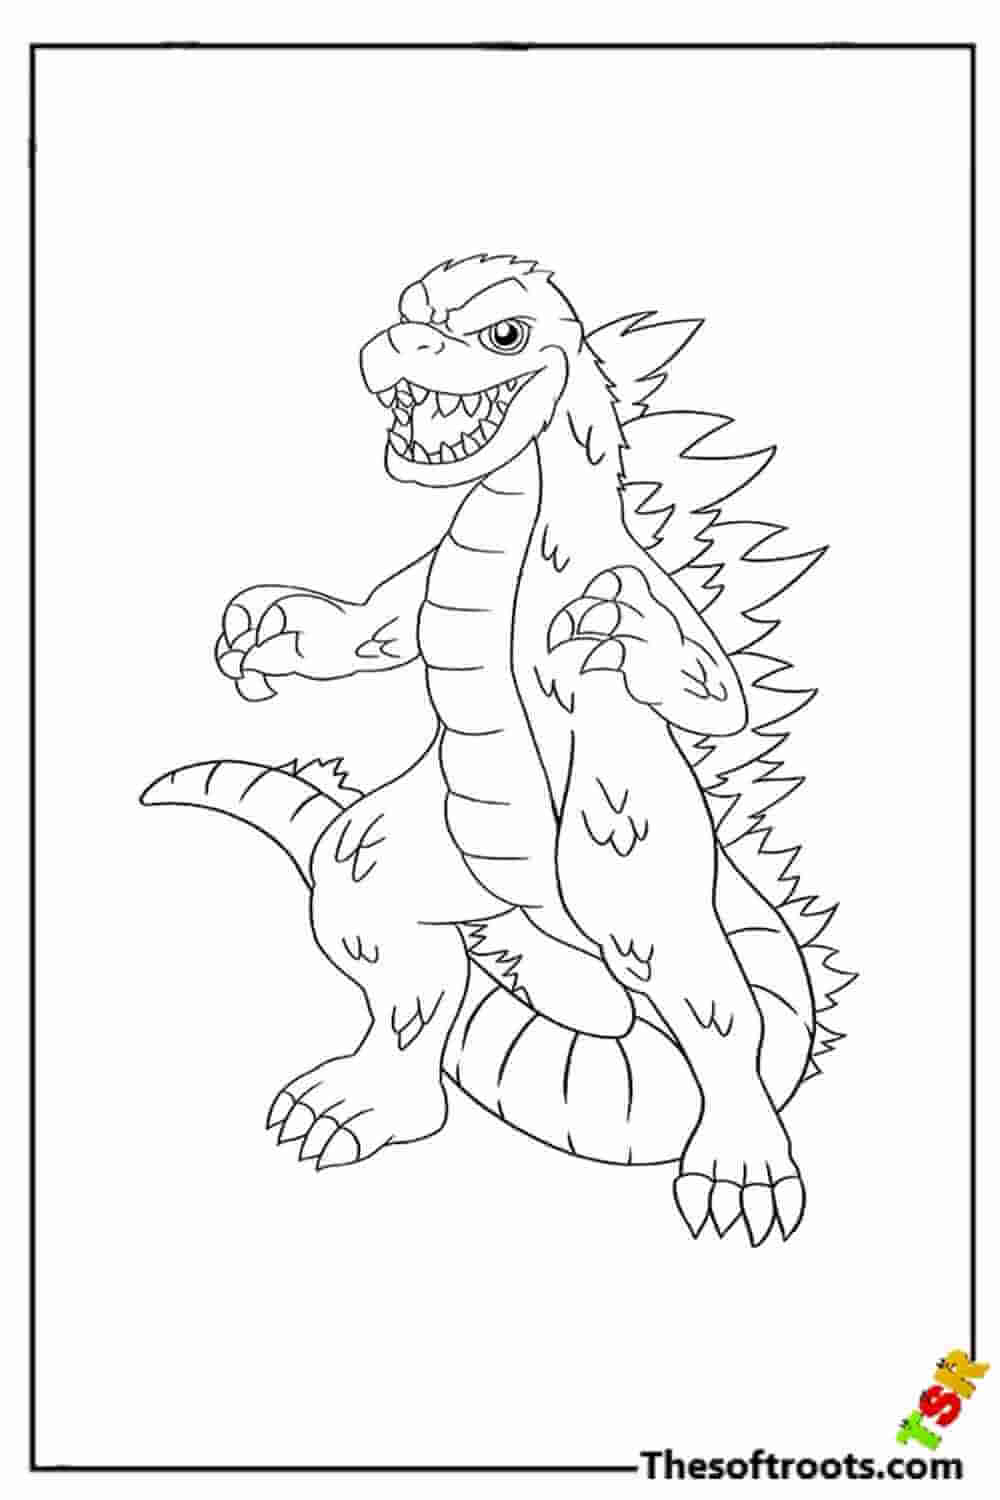 Cartoon Godzilla coloring pages